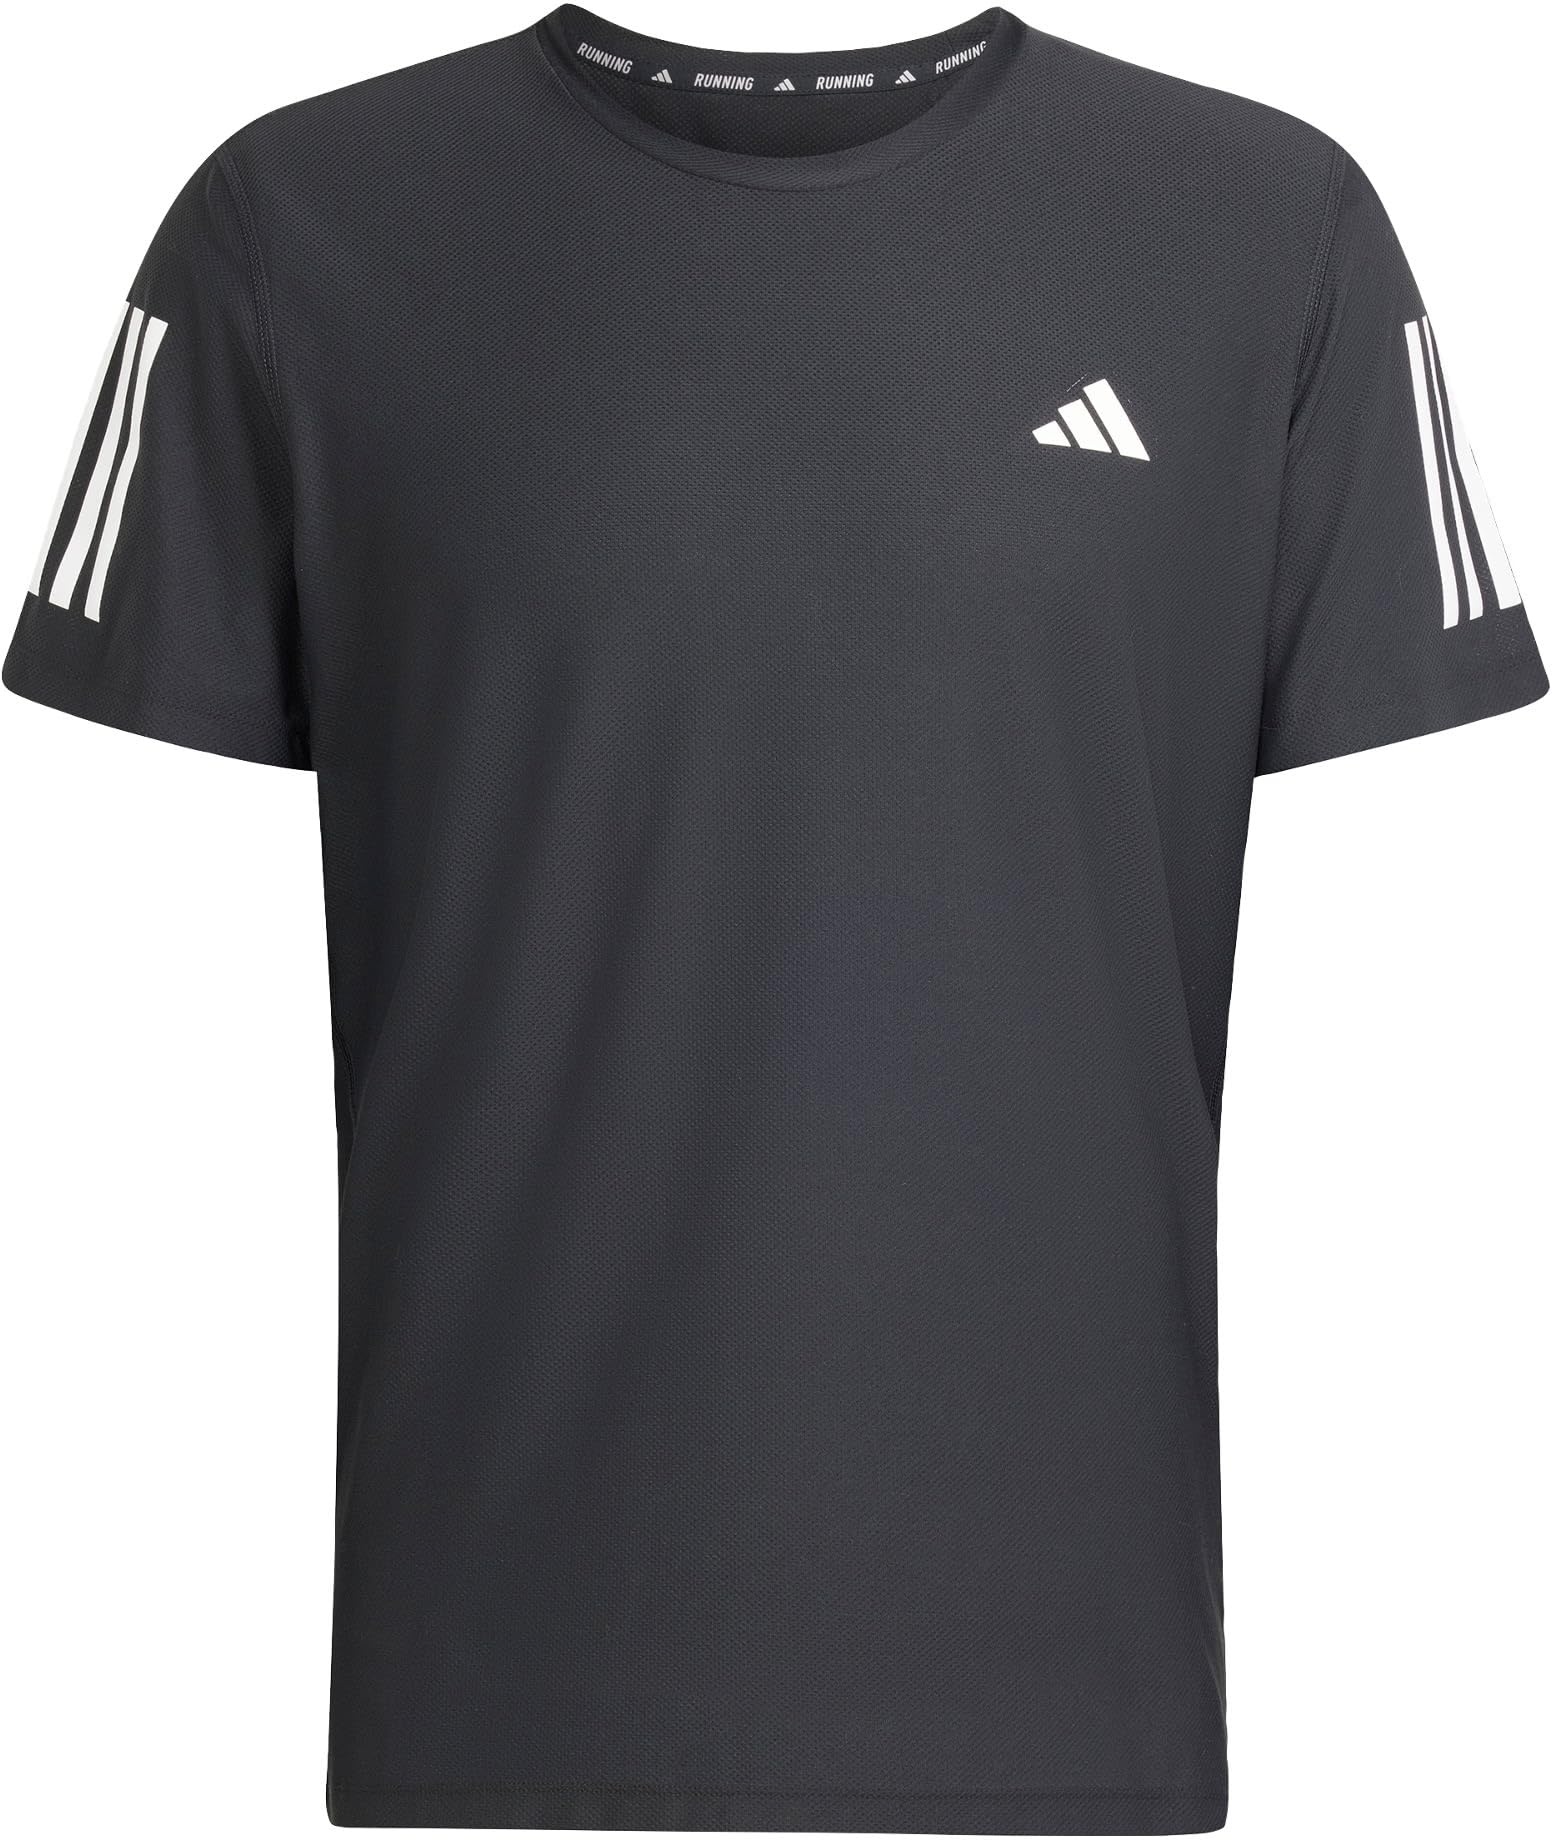 adidas Men's Own The Run Tee T-Shirt, Black, M